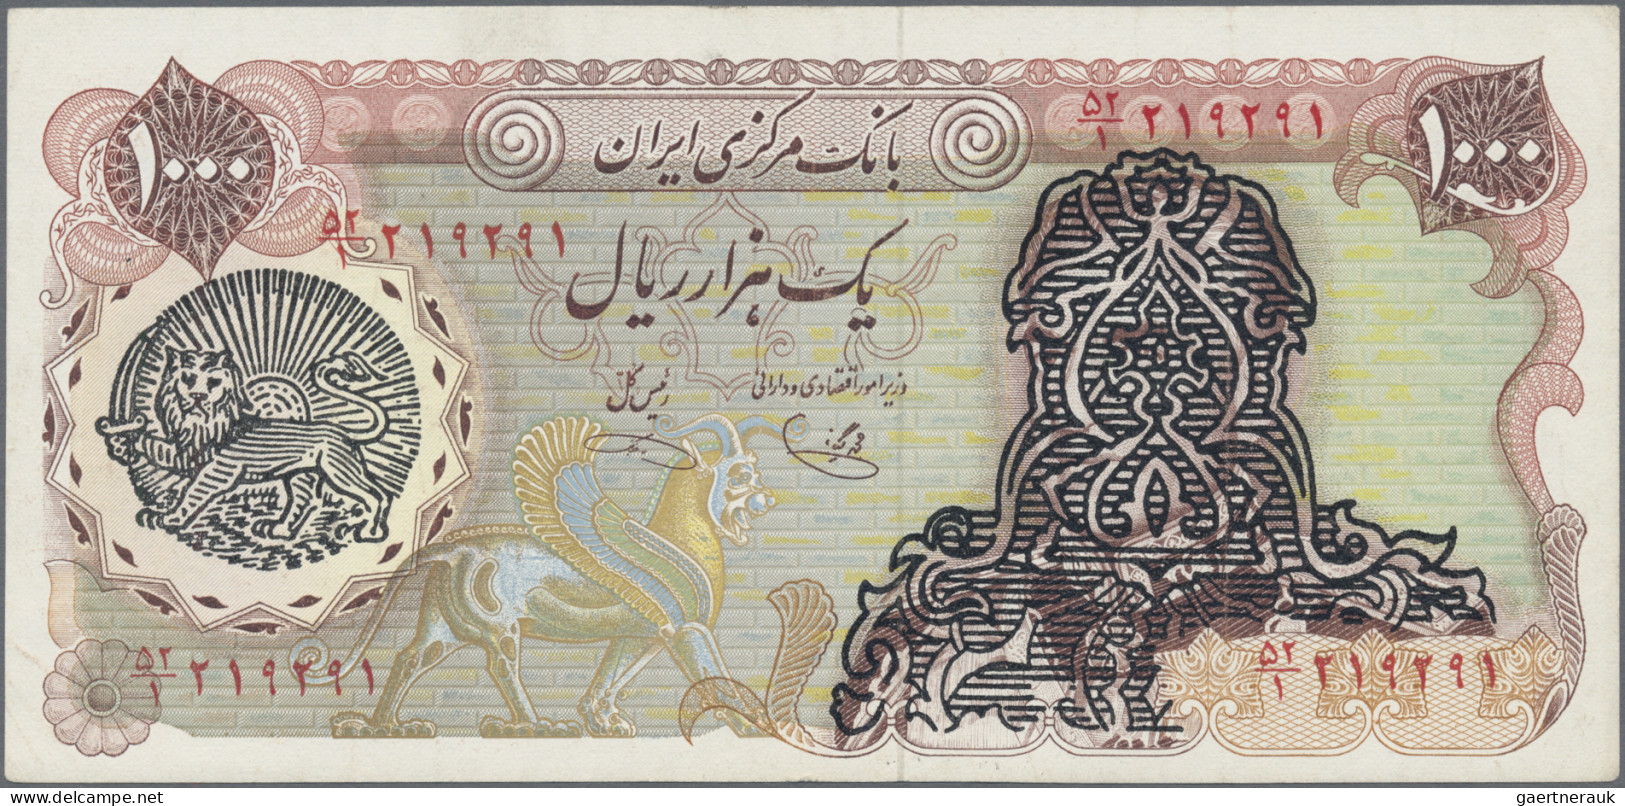 Iran: Bank Markazi Iran, lot with 5 banknotes overprint series ND(1979), with 50